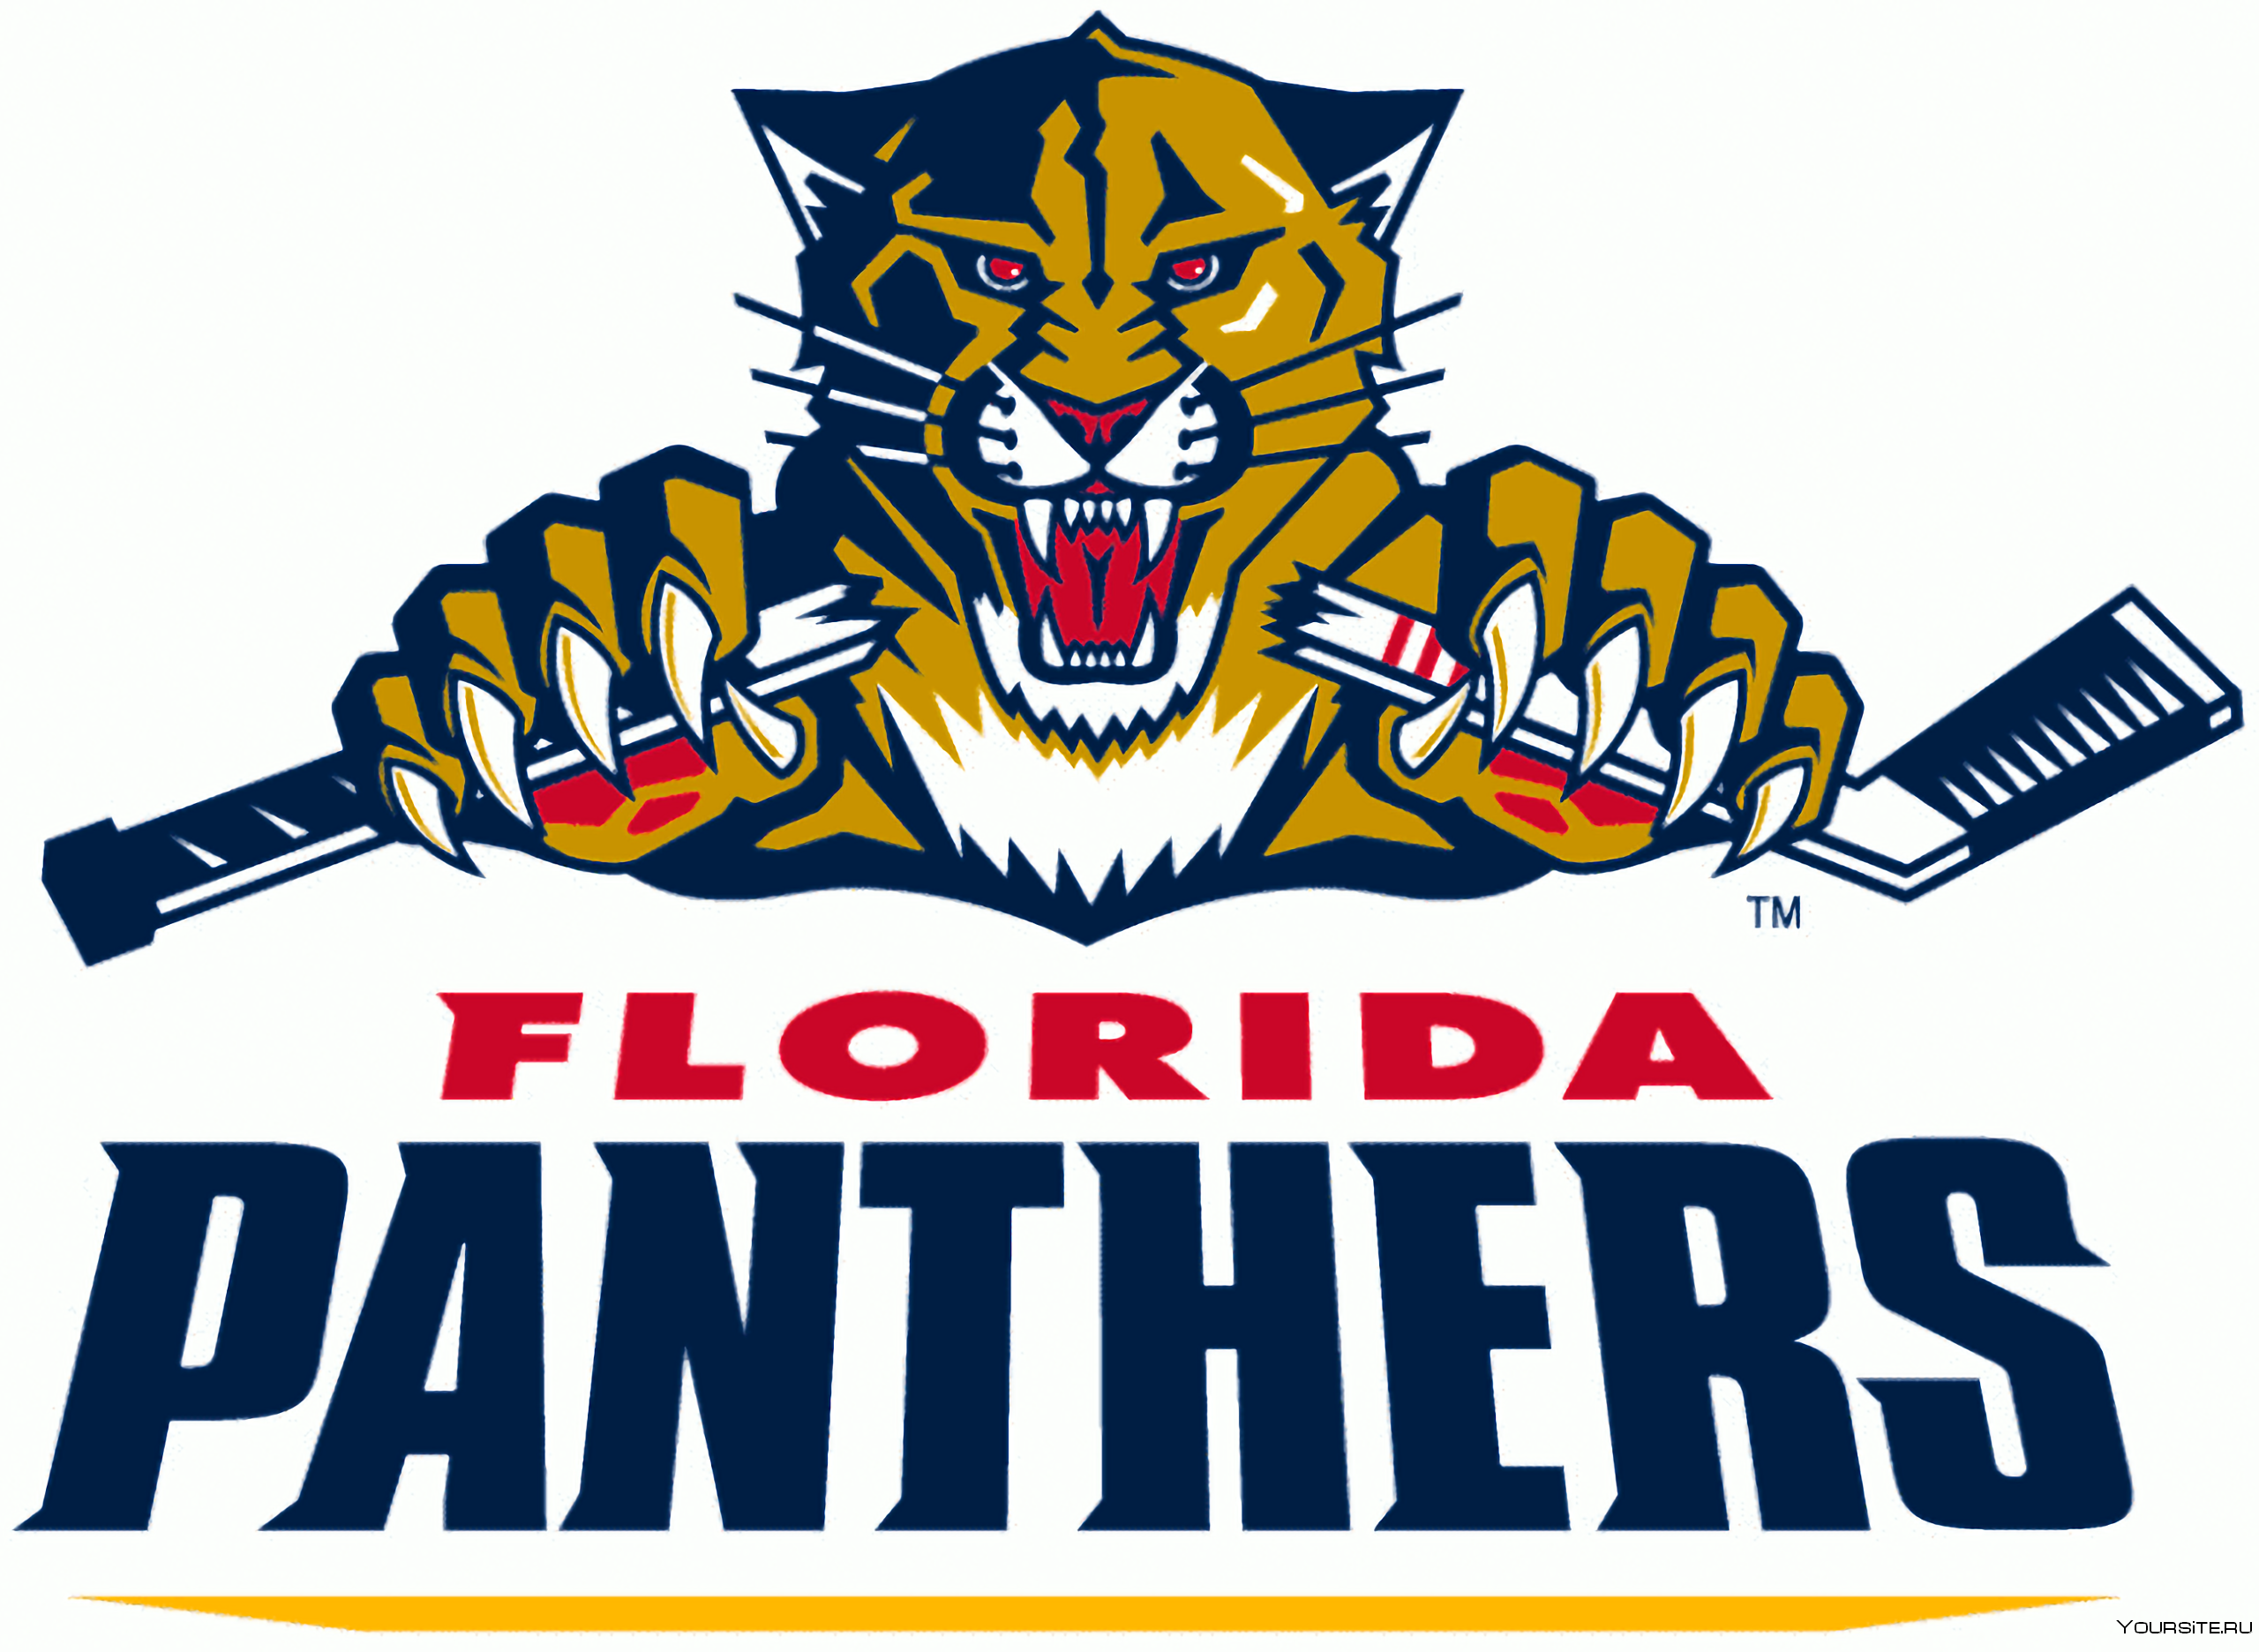 Придумать название клуба. Хоккейный клуб Флорида Пантерз. Эмблема хоккейной команды Флорида Пантерс. Хк Флорида Пантерз логотип. Логотип эмблема клуба Флорида Пантерс.